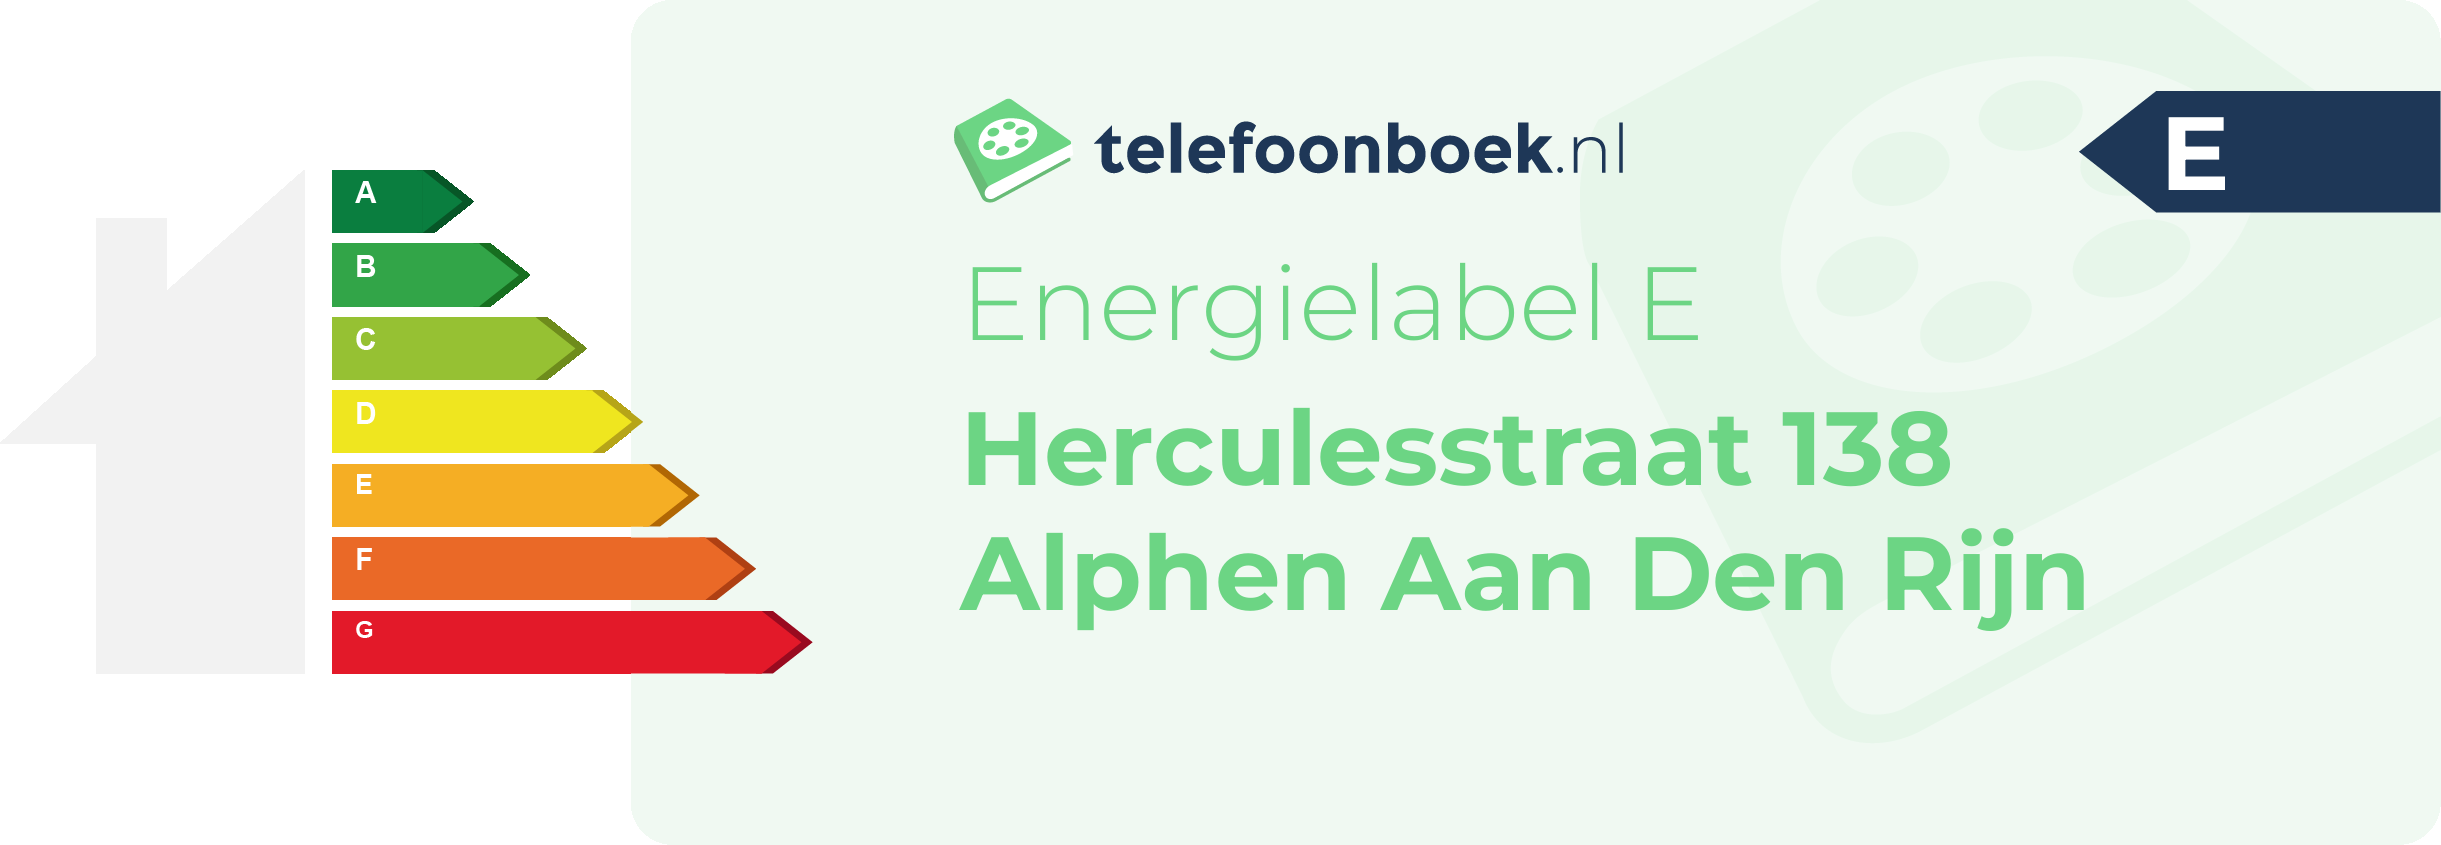 Energielabel Herculesstraat 138 Alphen Aan Den Rijn